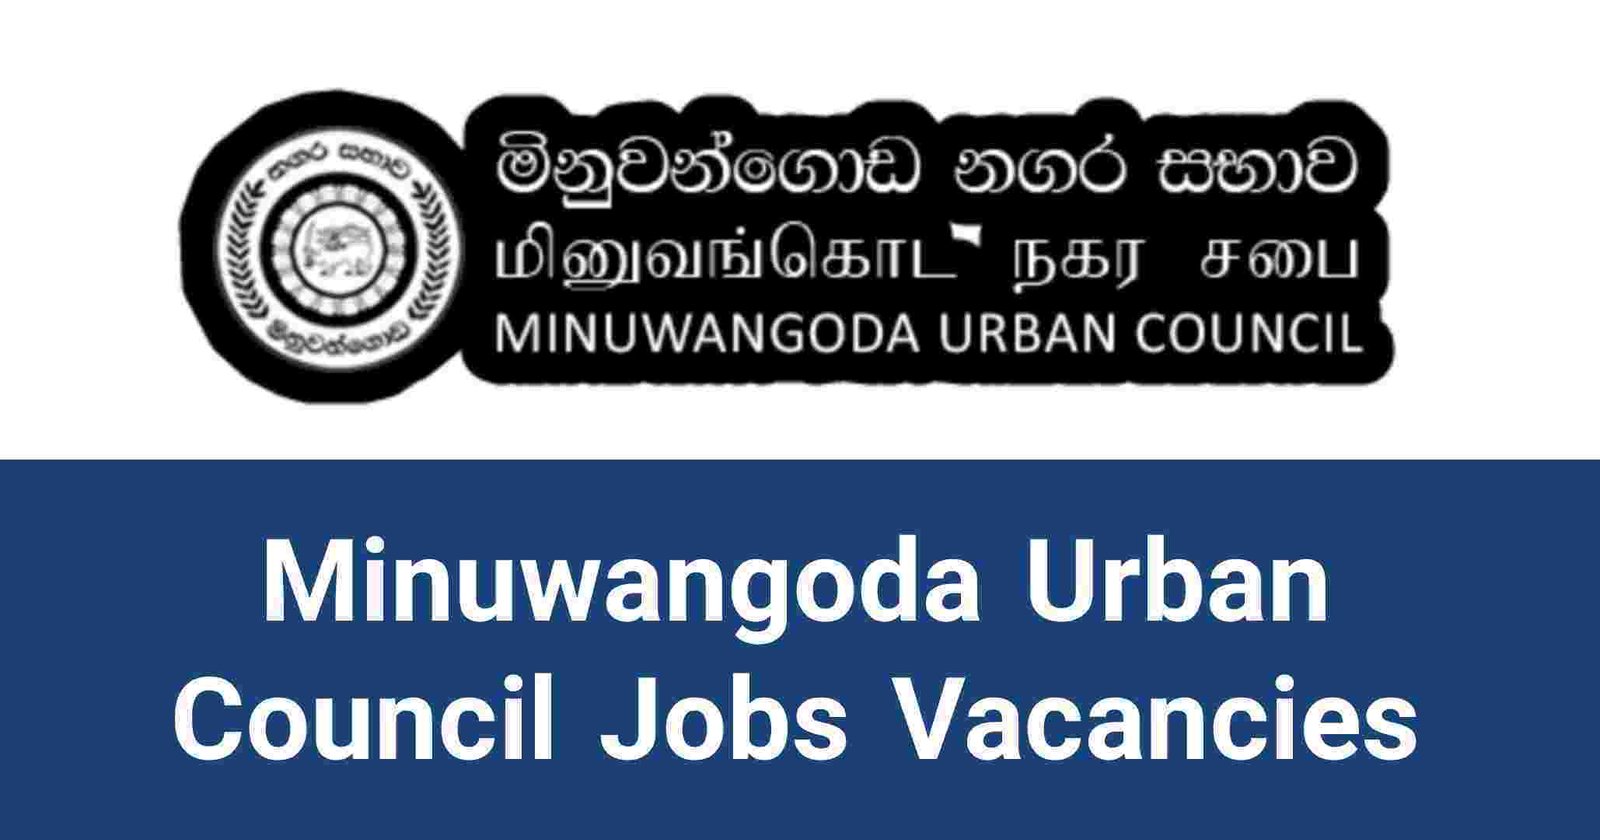 Minuwangoda Urban Council Jobs Vacancies